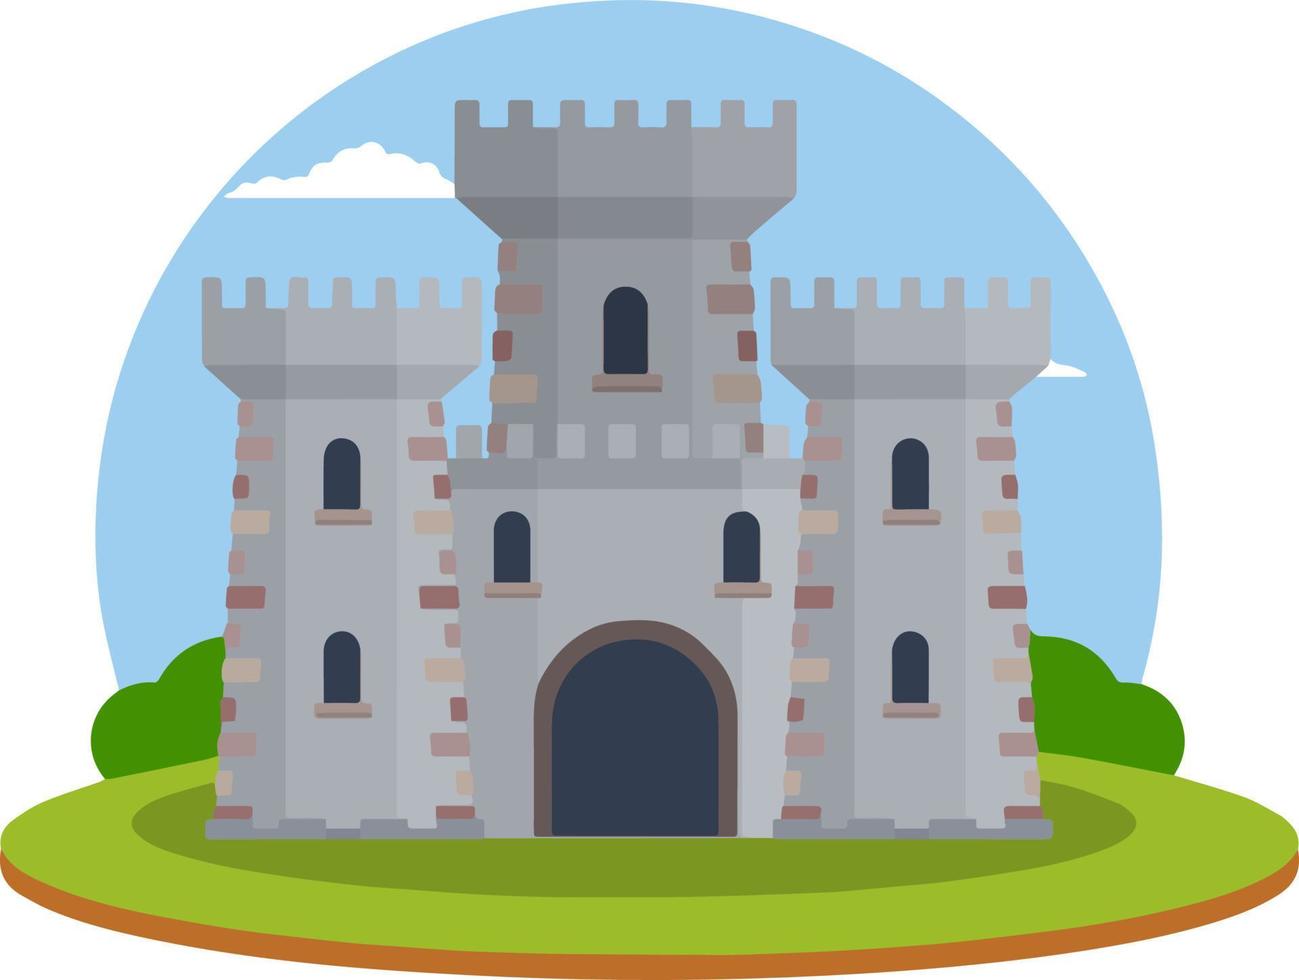 medeltida europeisk stenslott. riddarfästning. begreppet säkerhet, skydd och försvar. tecknad platt illustration. militär byggnad med murar, portar och stort torn. vektor